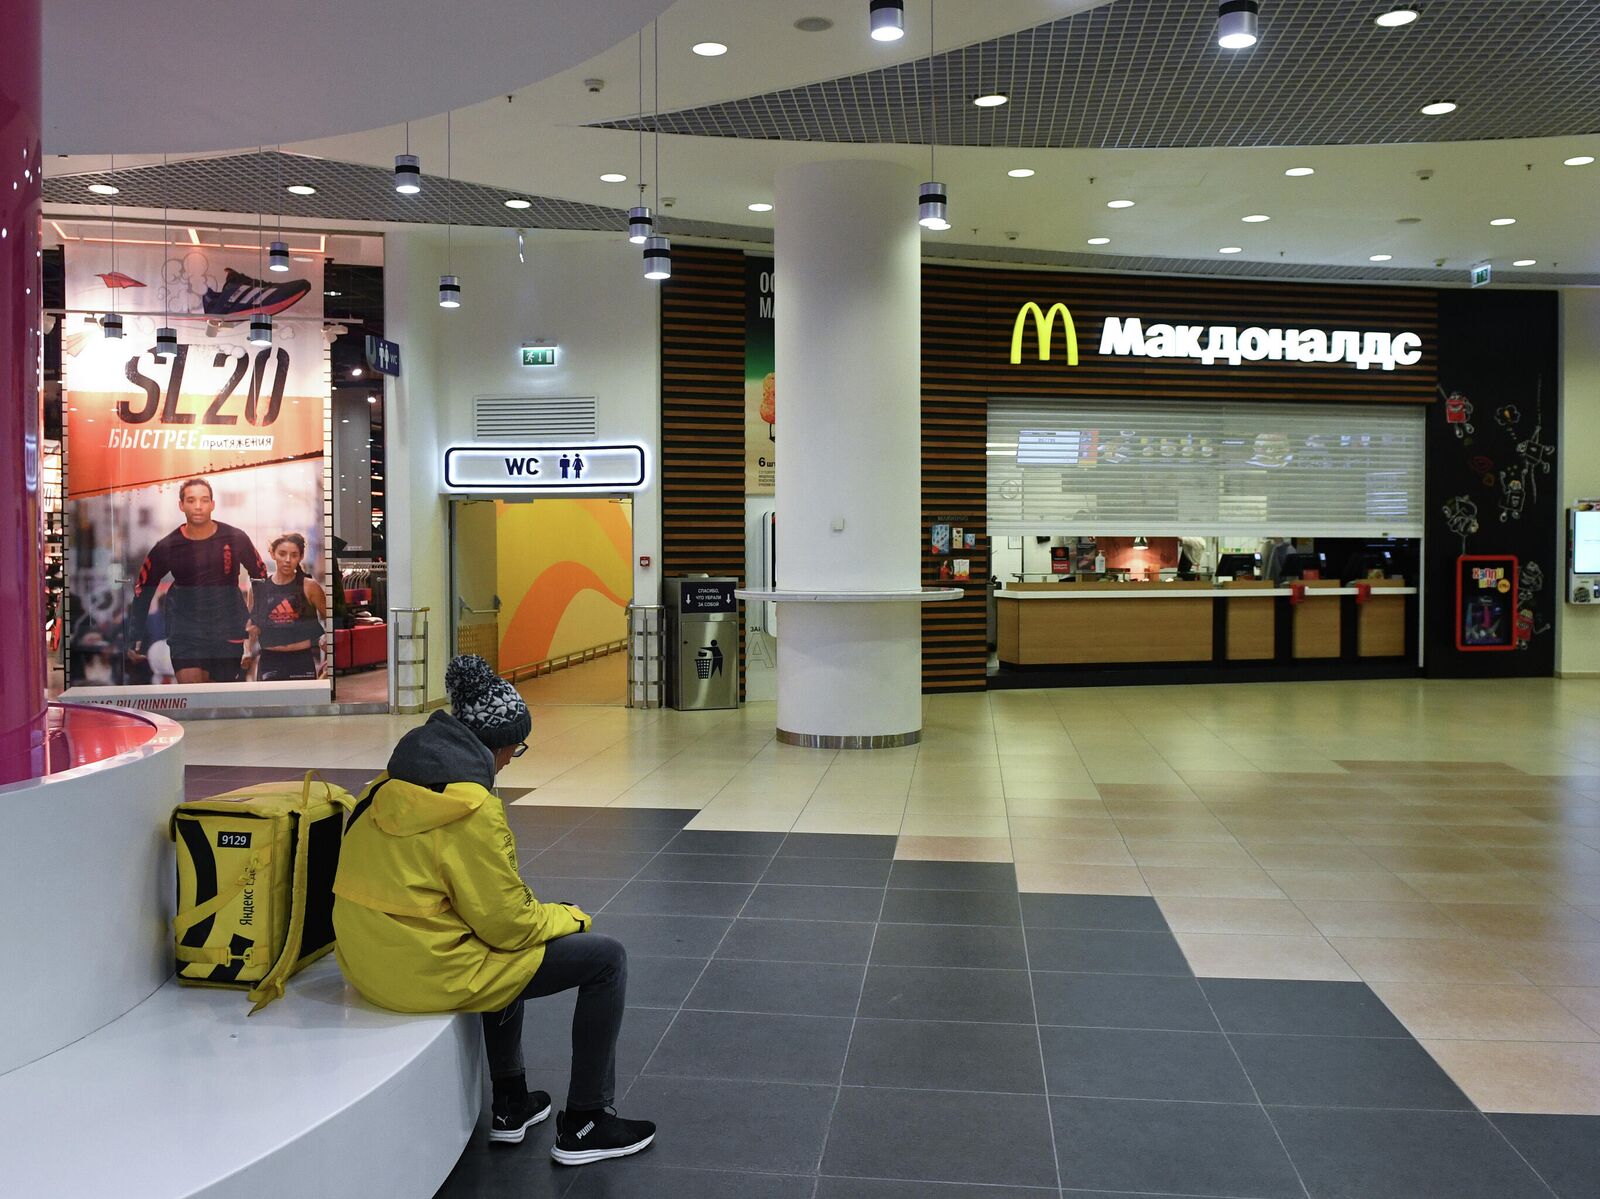 Магазины В Торговом Центре Галерея Новосибирск